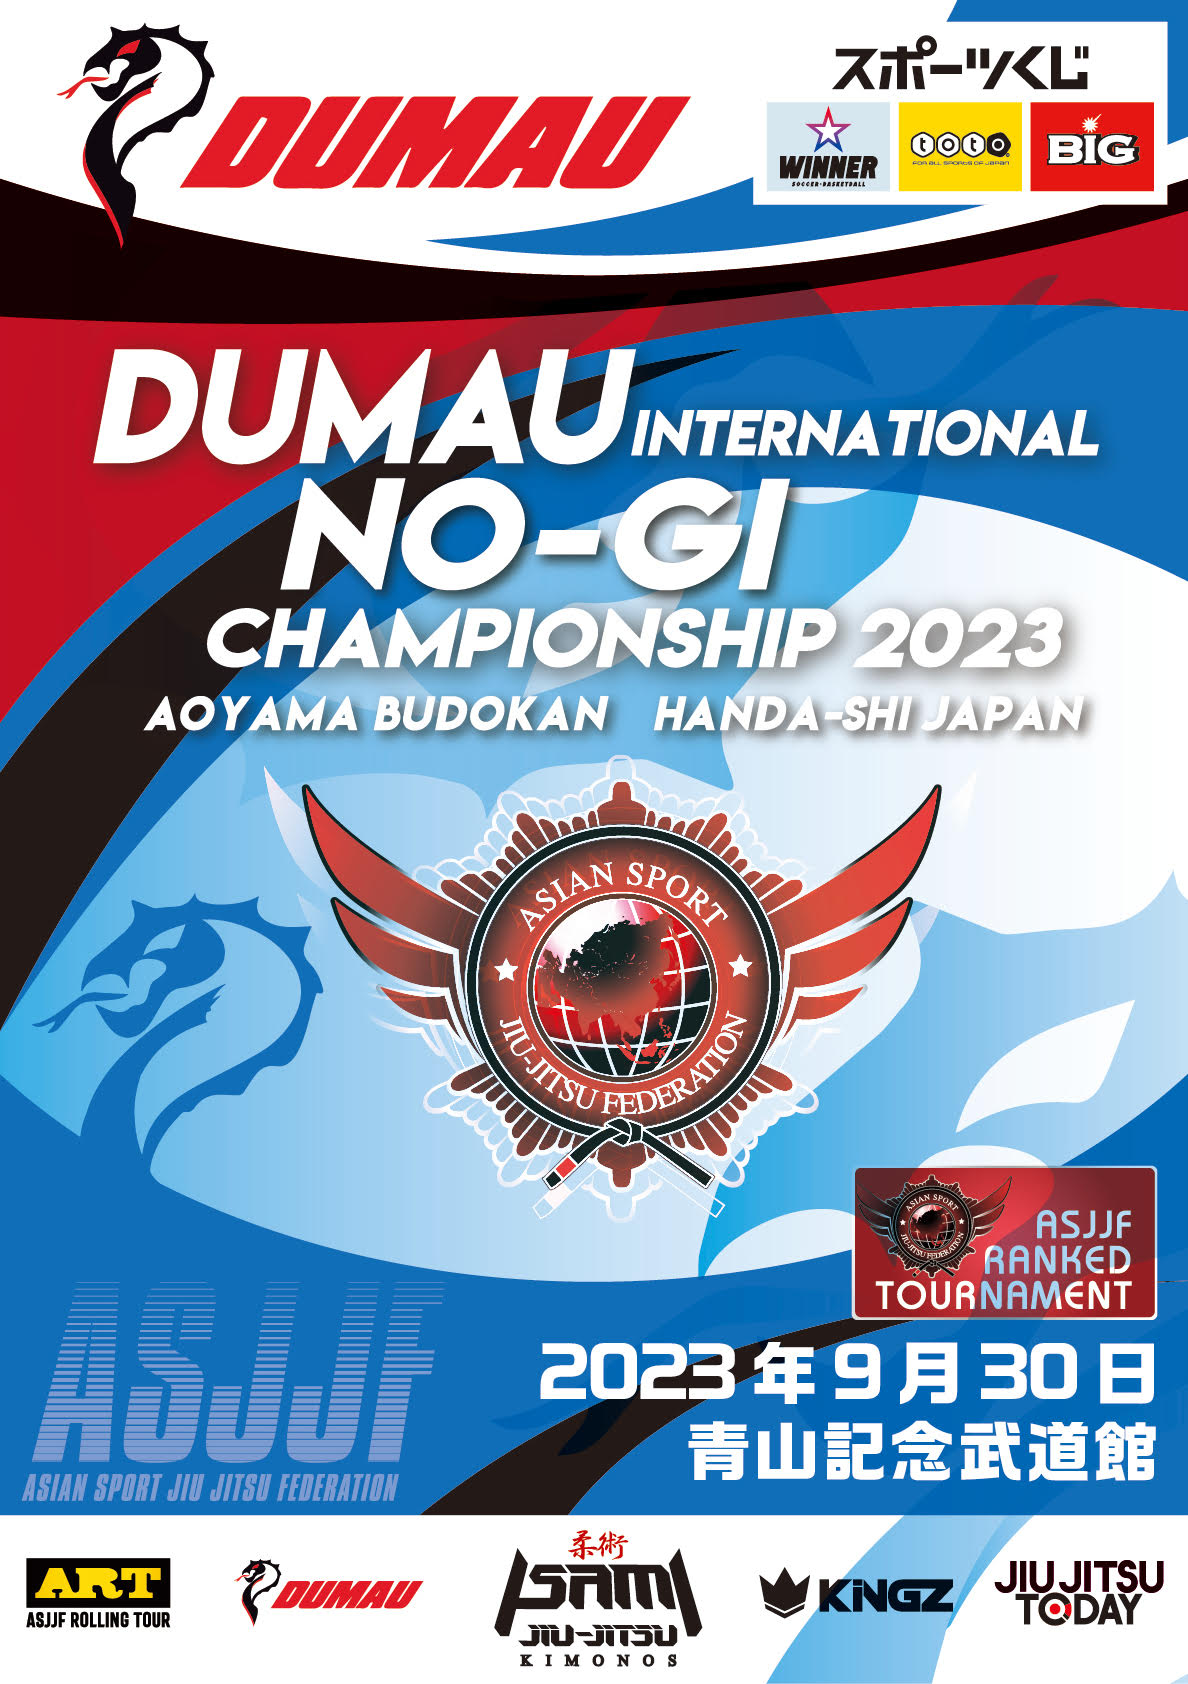 dumau international no-gi championship 2023